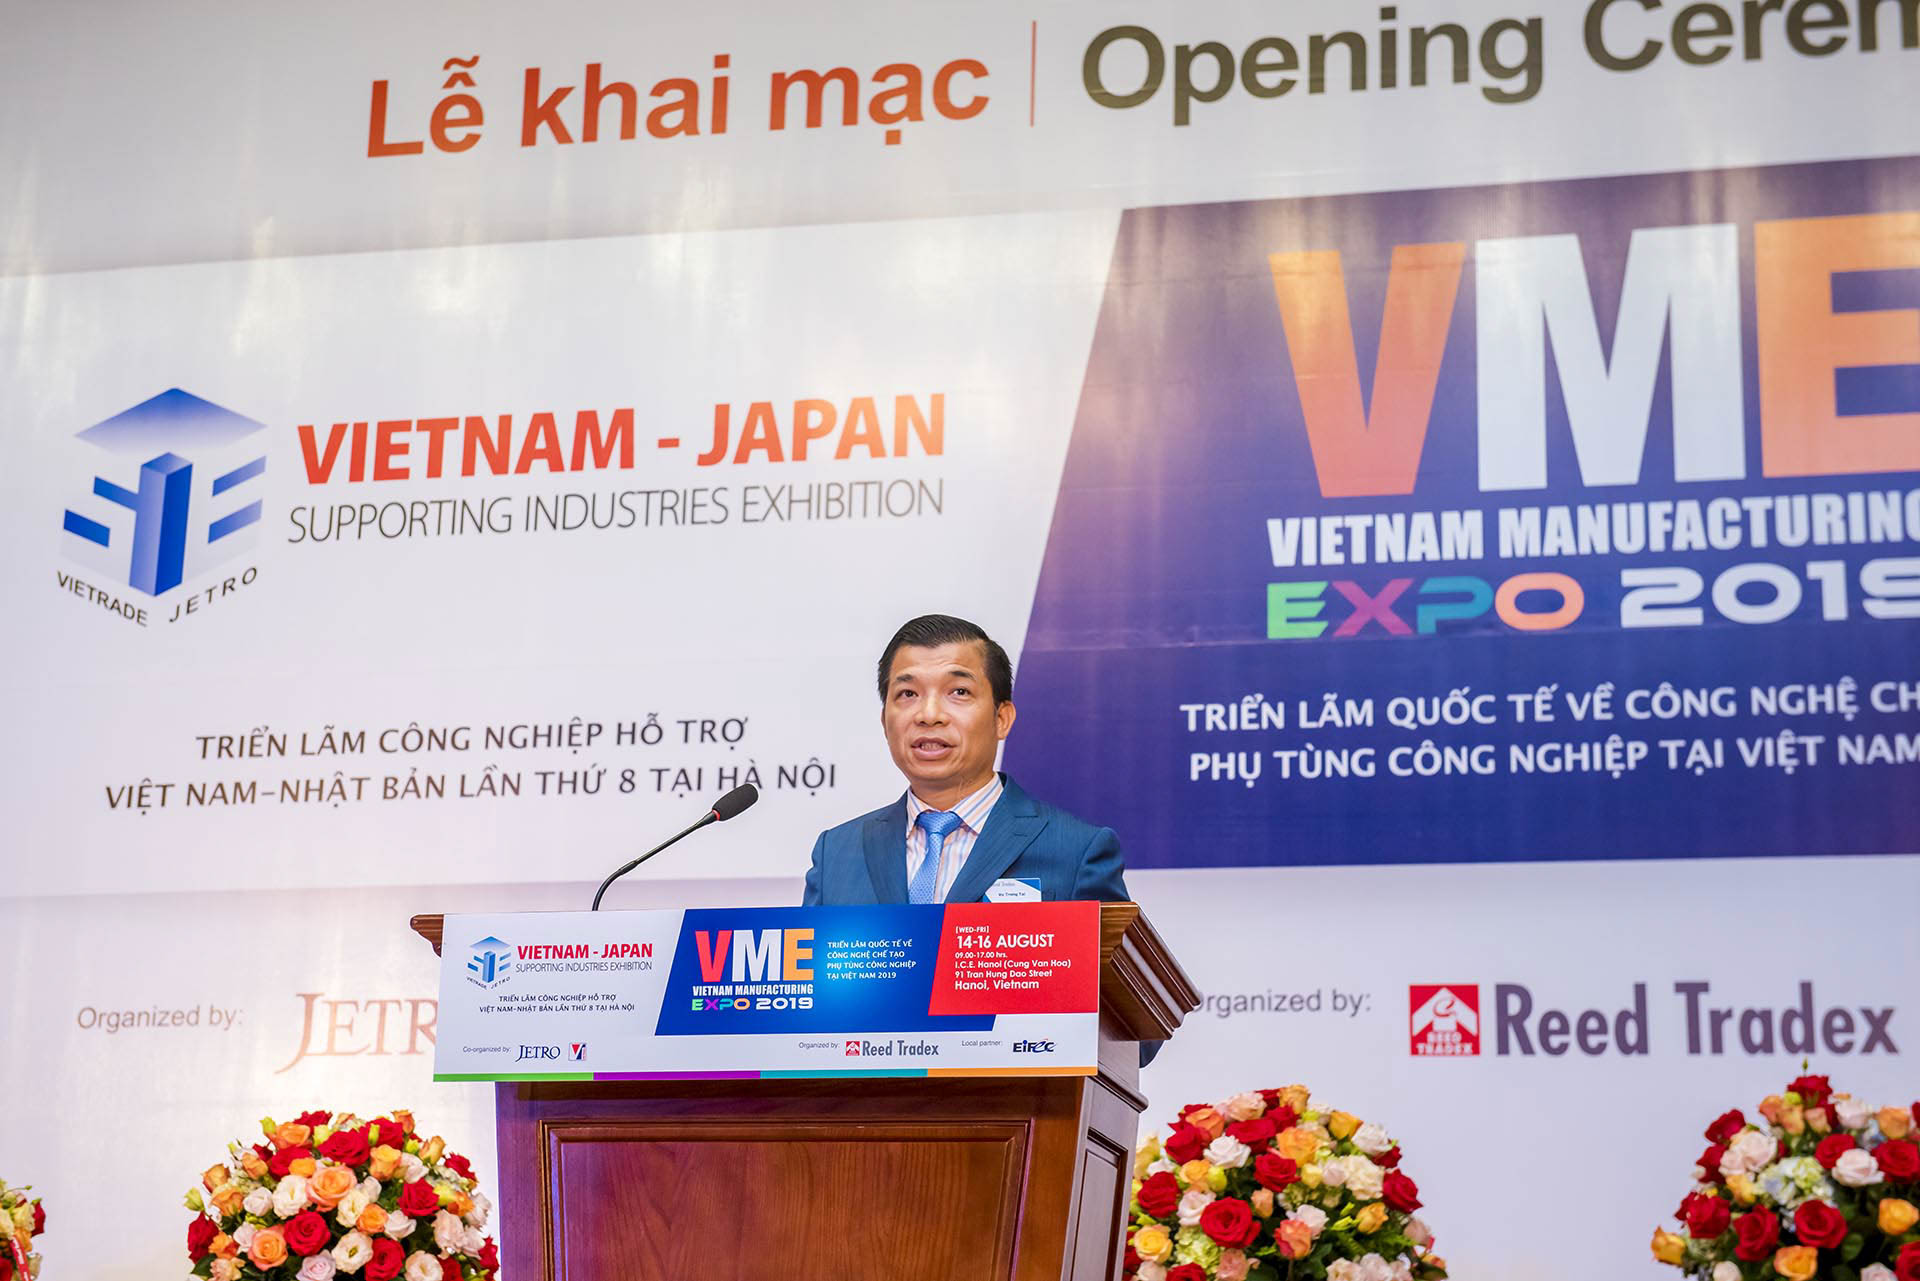 Ông Vũ Trọng Tài - Tổng Giám đốc Công ty TNHH Reed Tradex Việt Nam